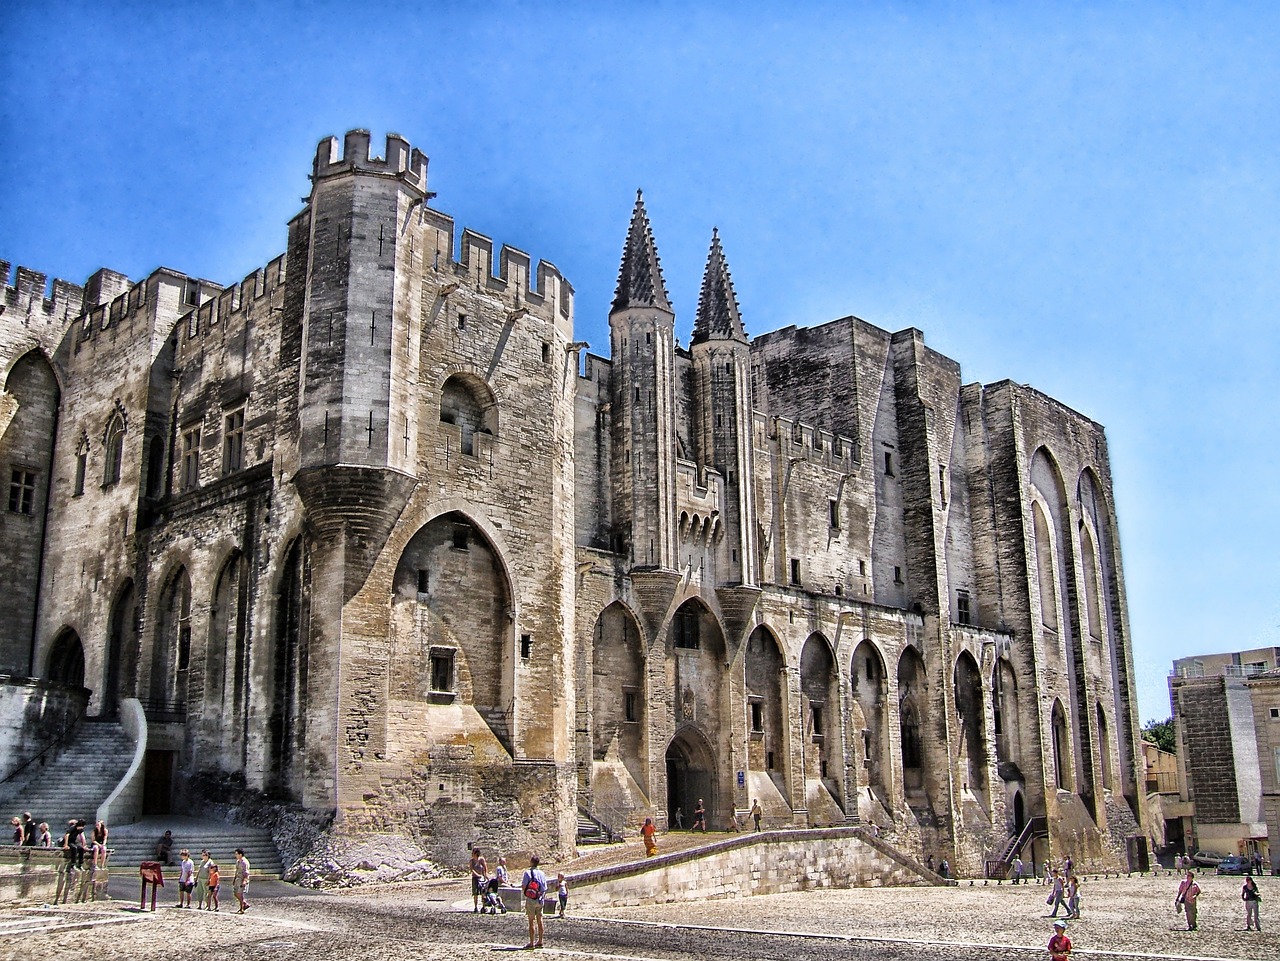 4-Day Adventure in Avignon, France